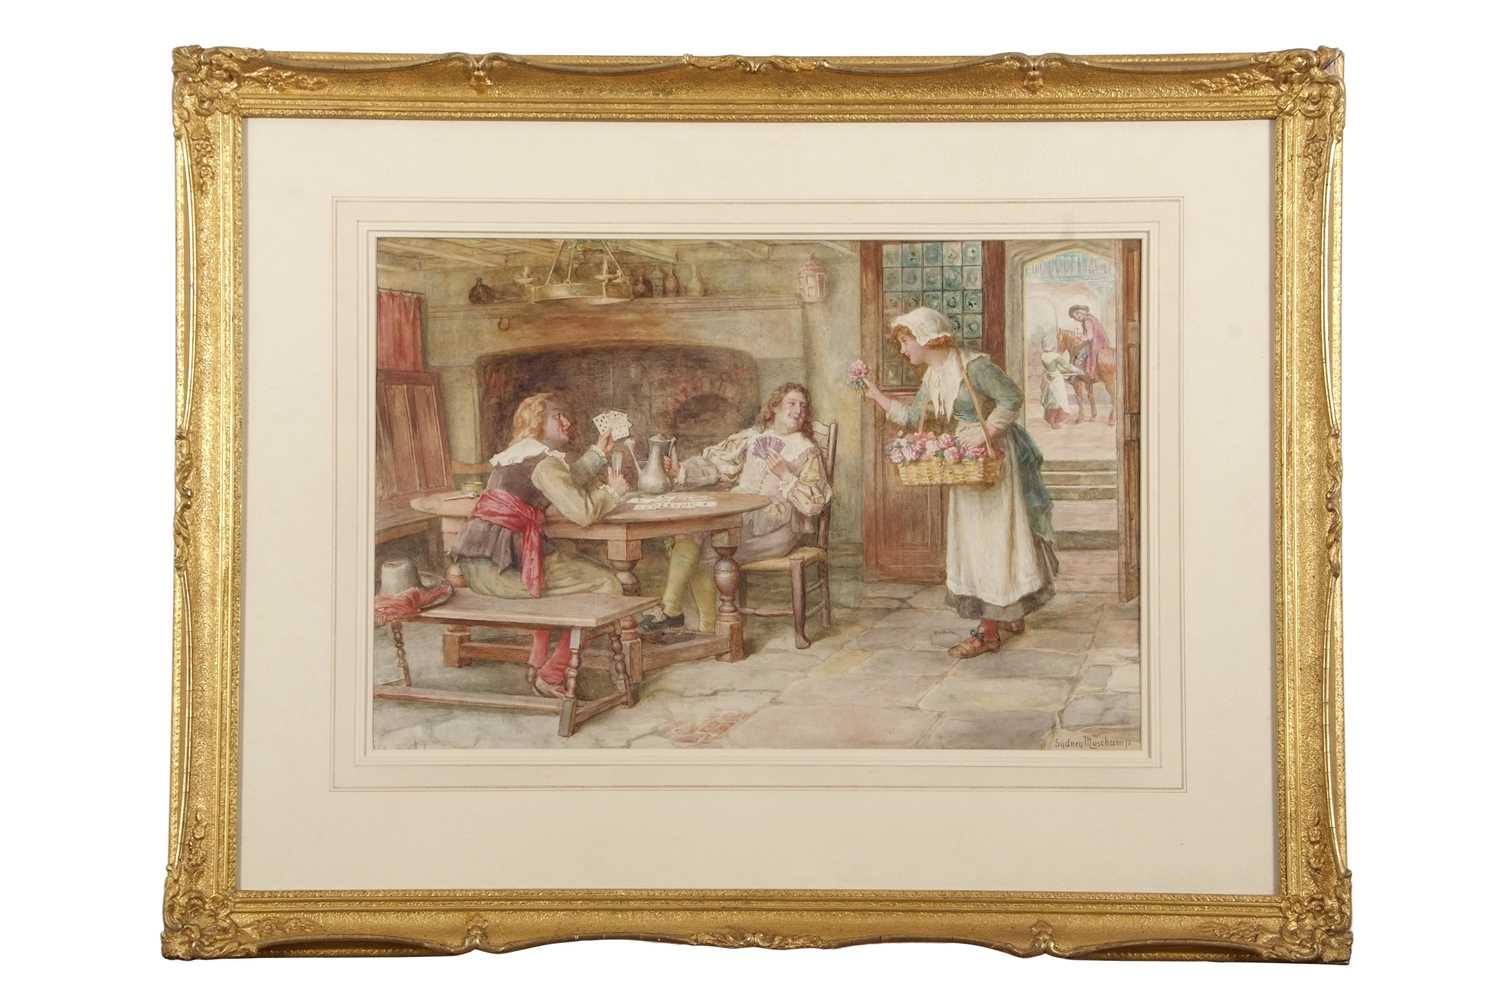 Francis Sydney Muschamp RBA (1851-1929), The Flower Seller, watercolour, signed, gilt framed,